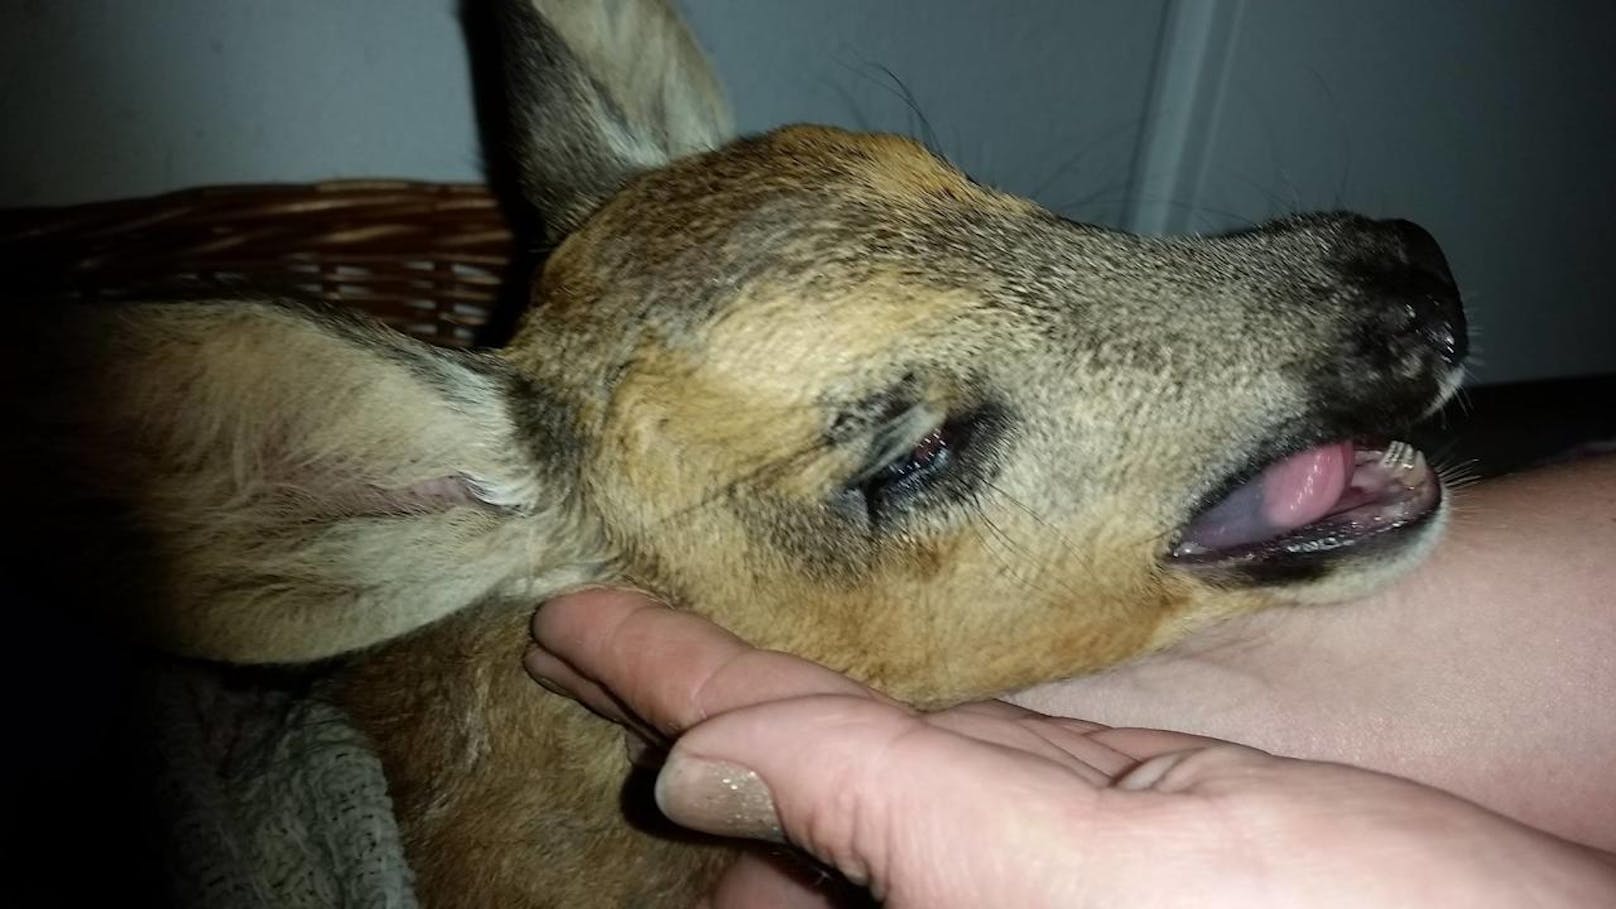 Das kleine "Bambi" war völlig dehydriert, überhitzt und erschöpft.